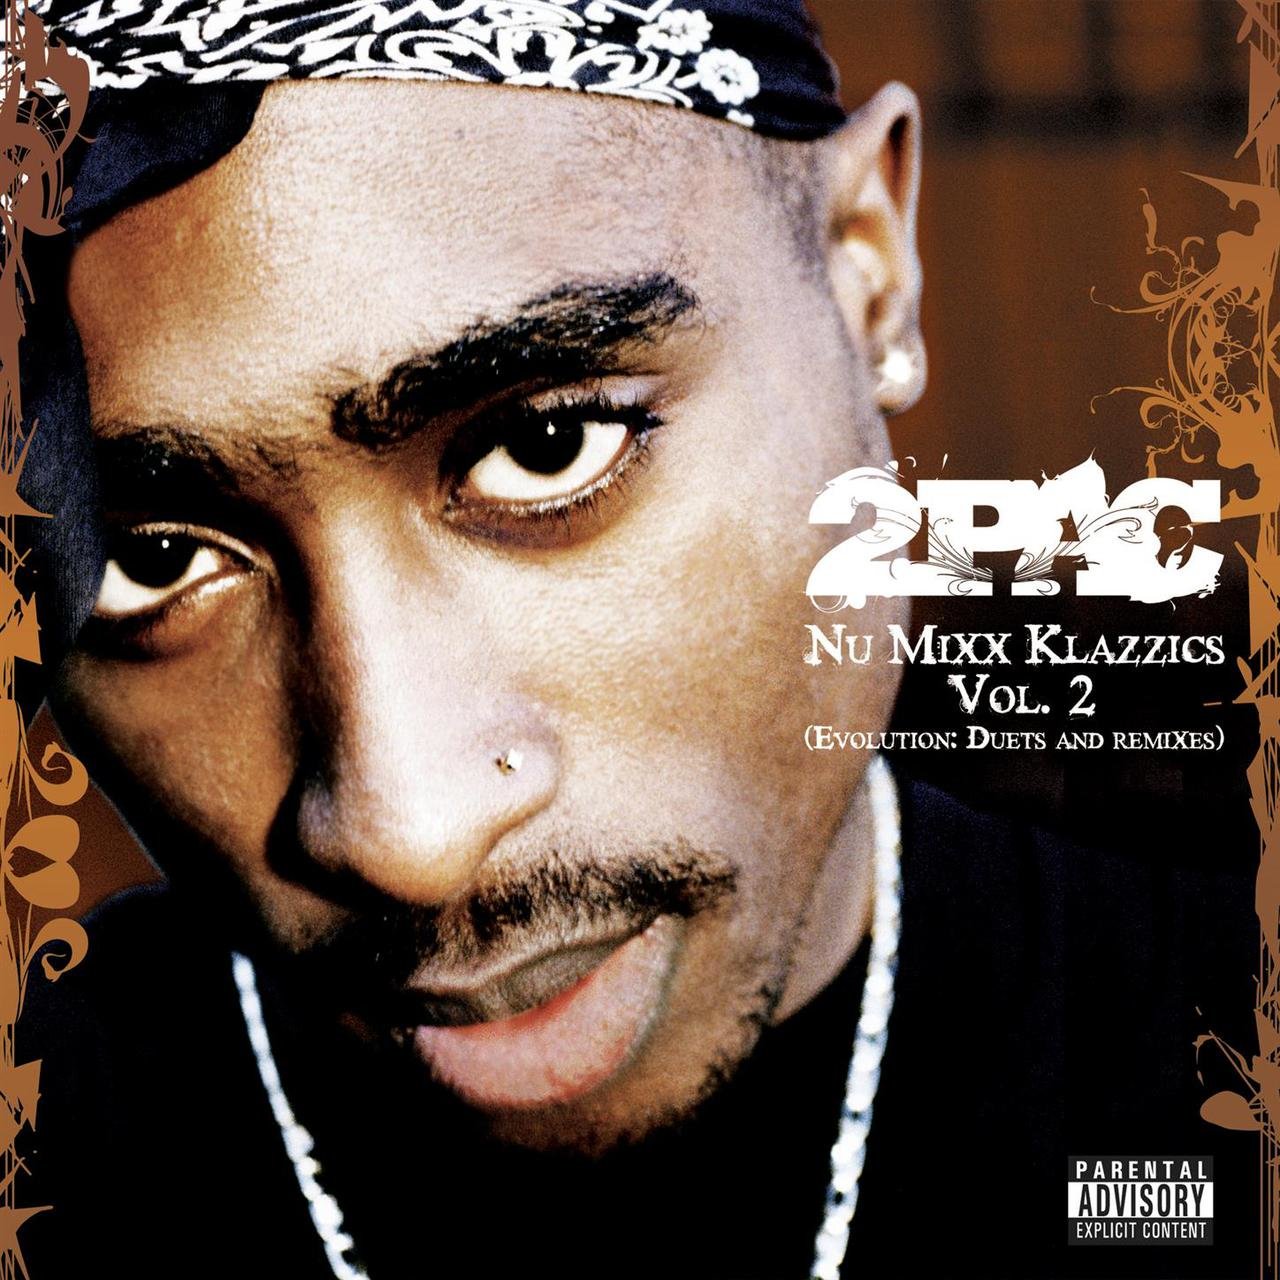 2Pac - Nu Mixx Klazzics Vol. 2 (Evolution: Duets And Remixes) (Cover)